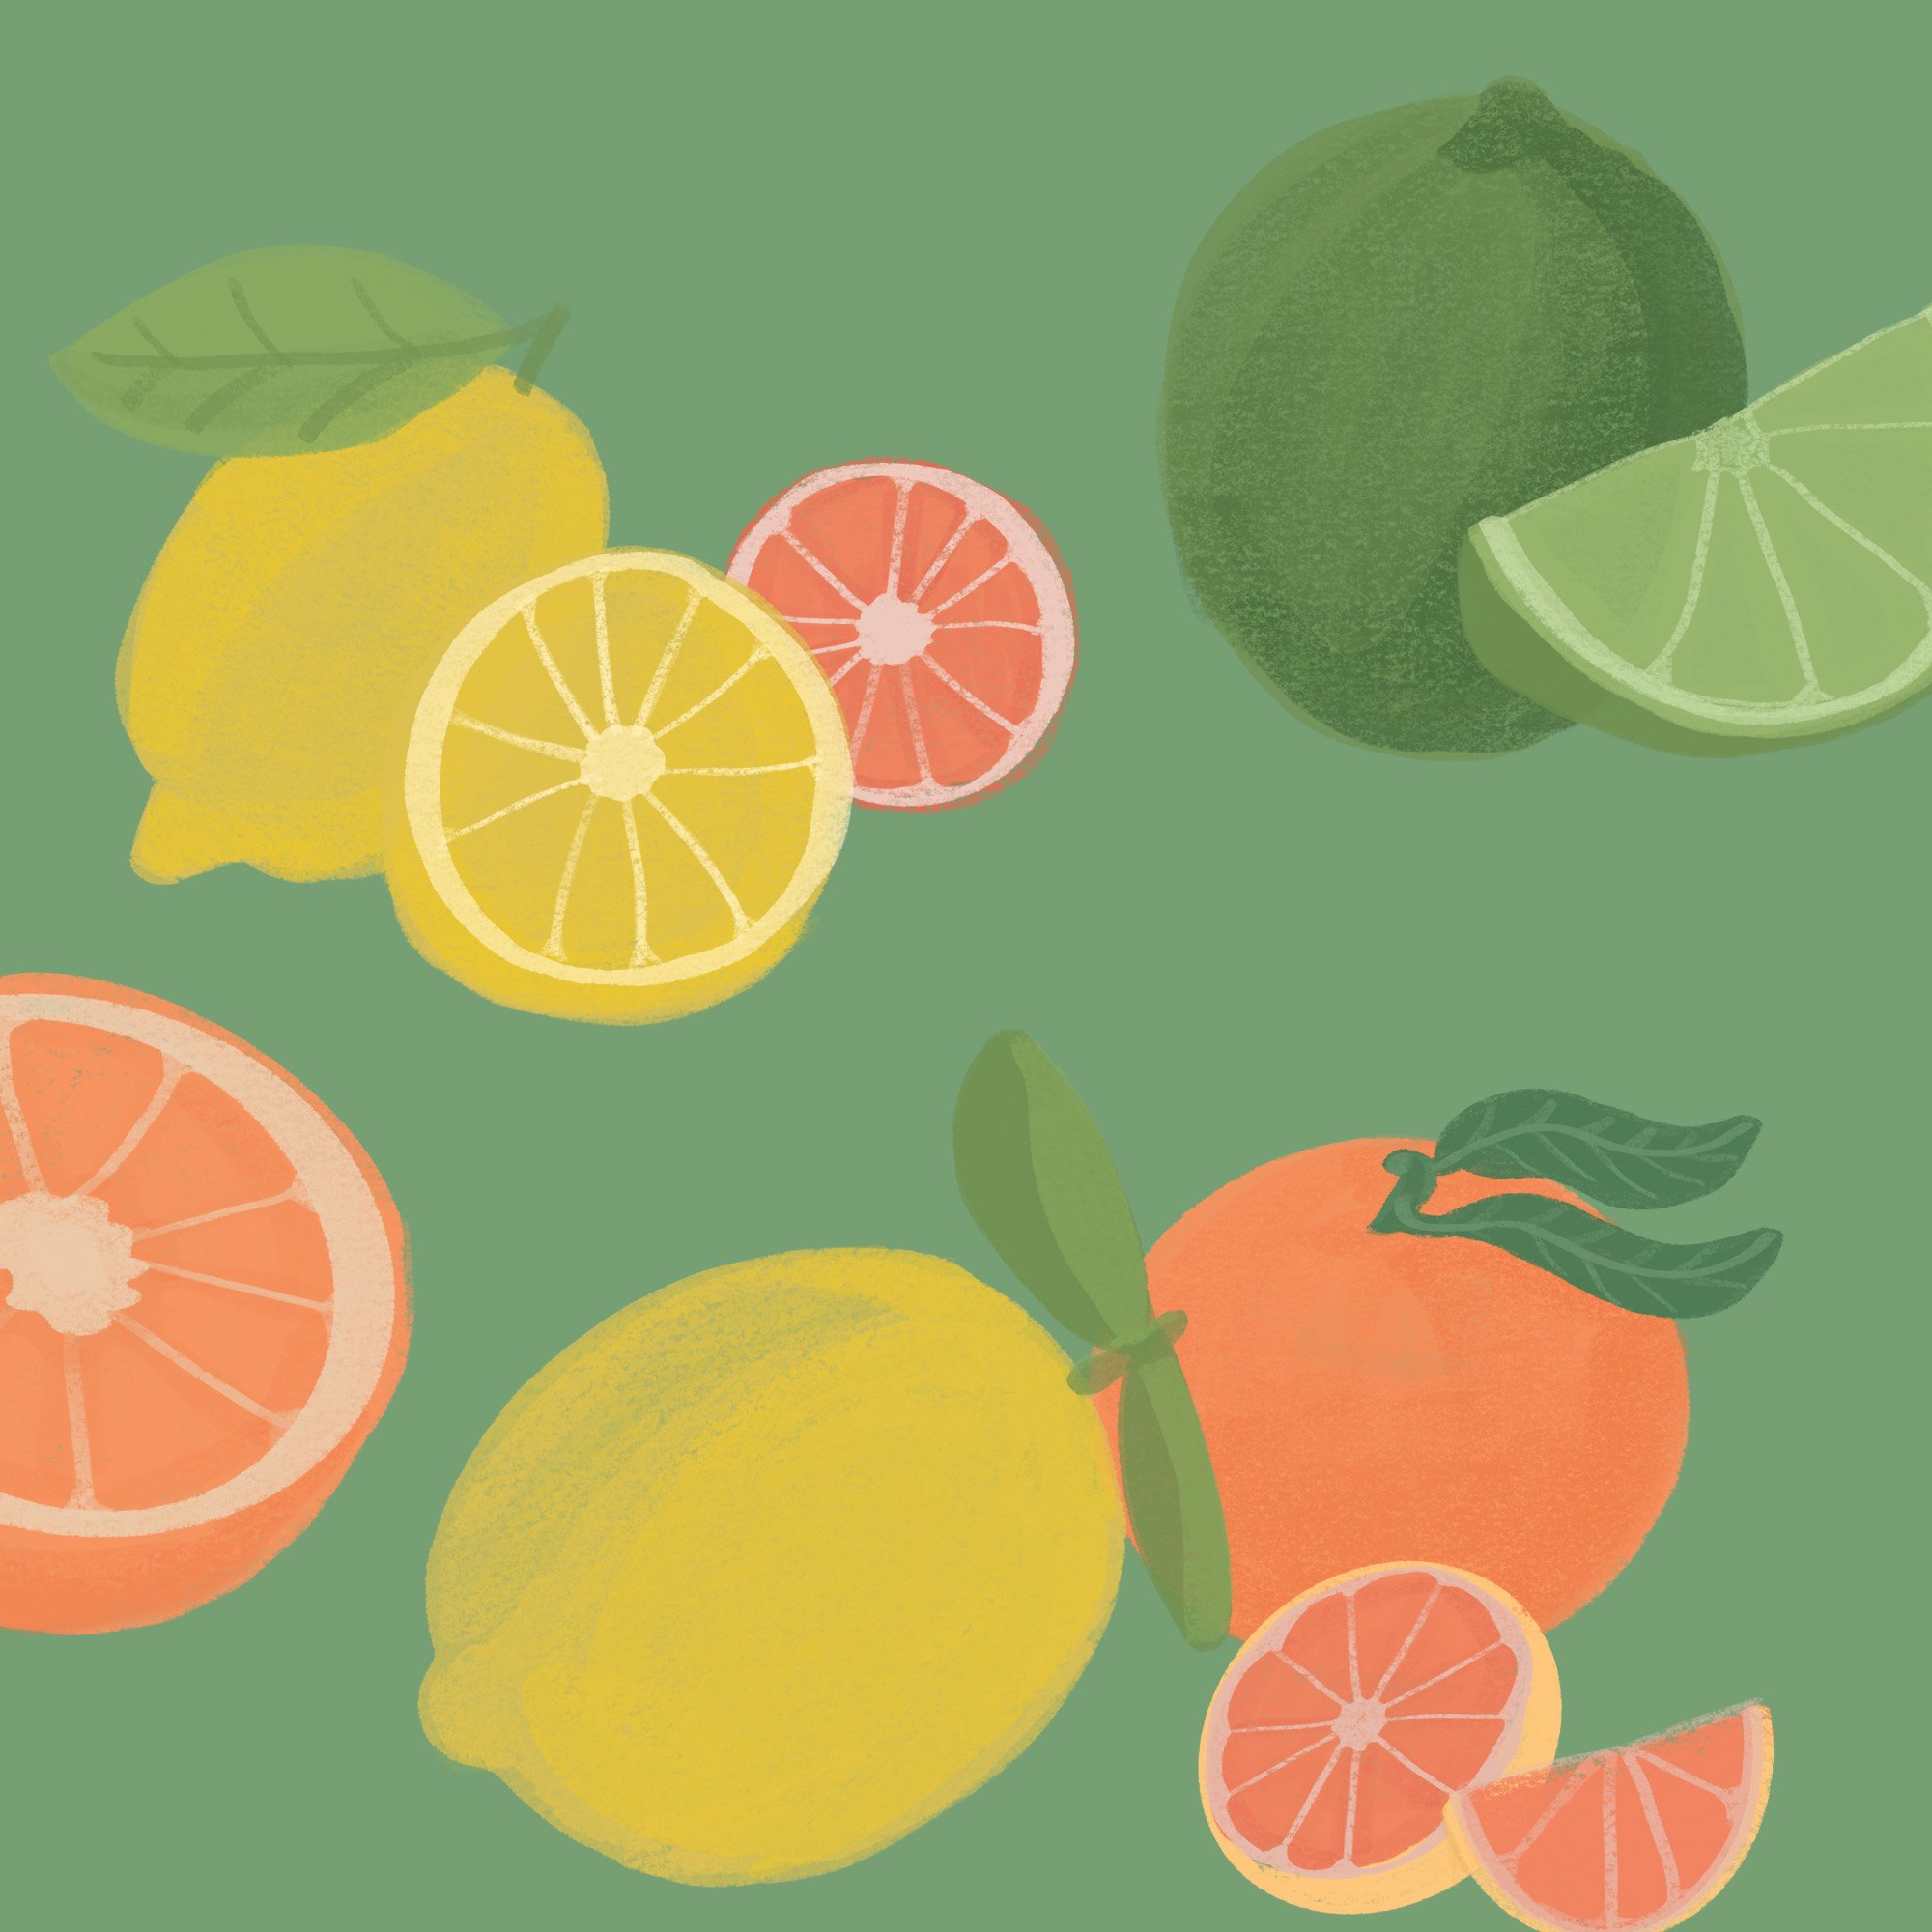 citrus fruit image6 565